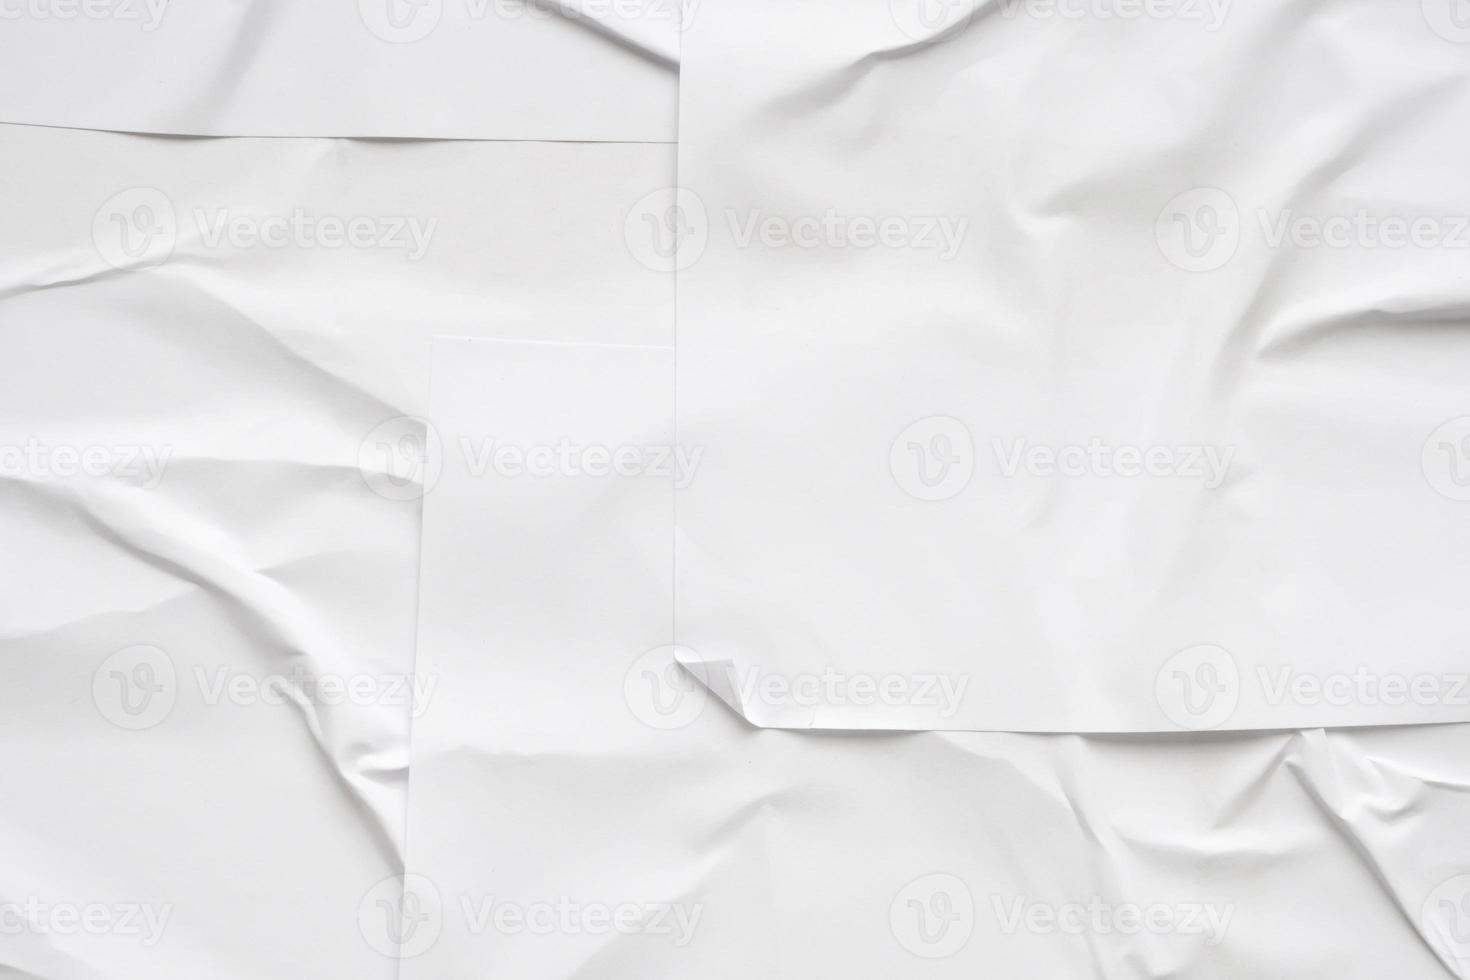 blanc Vide froissé et plié papier affiche texture Contexte photo